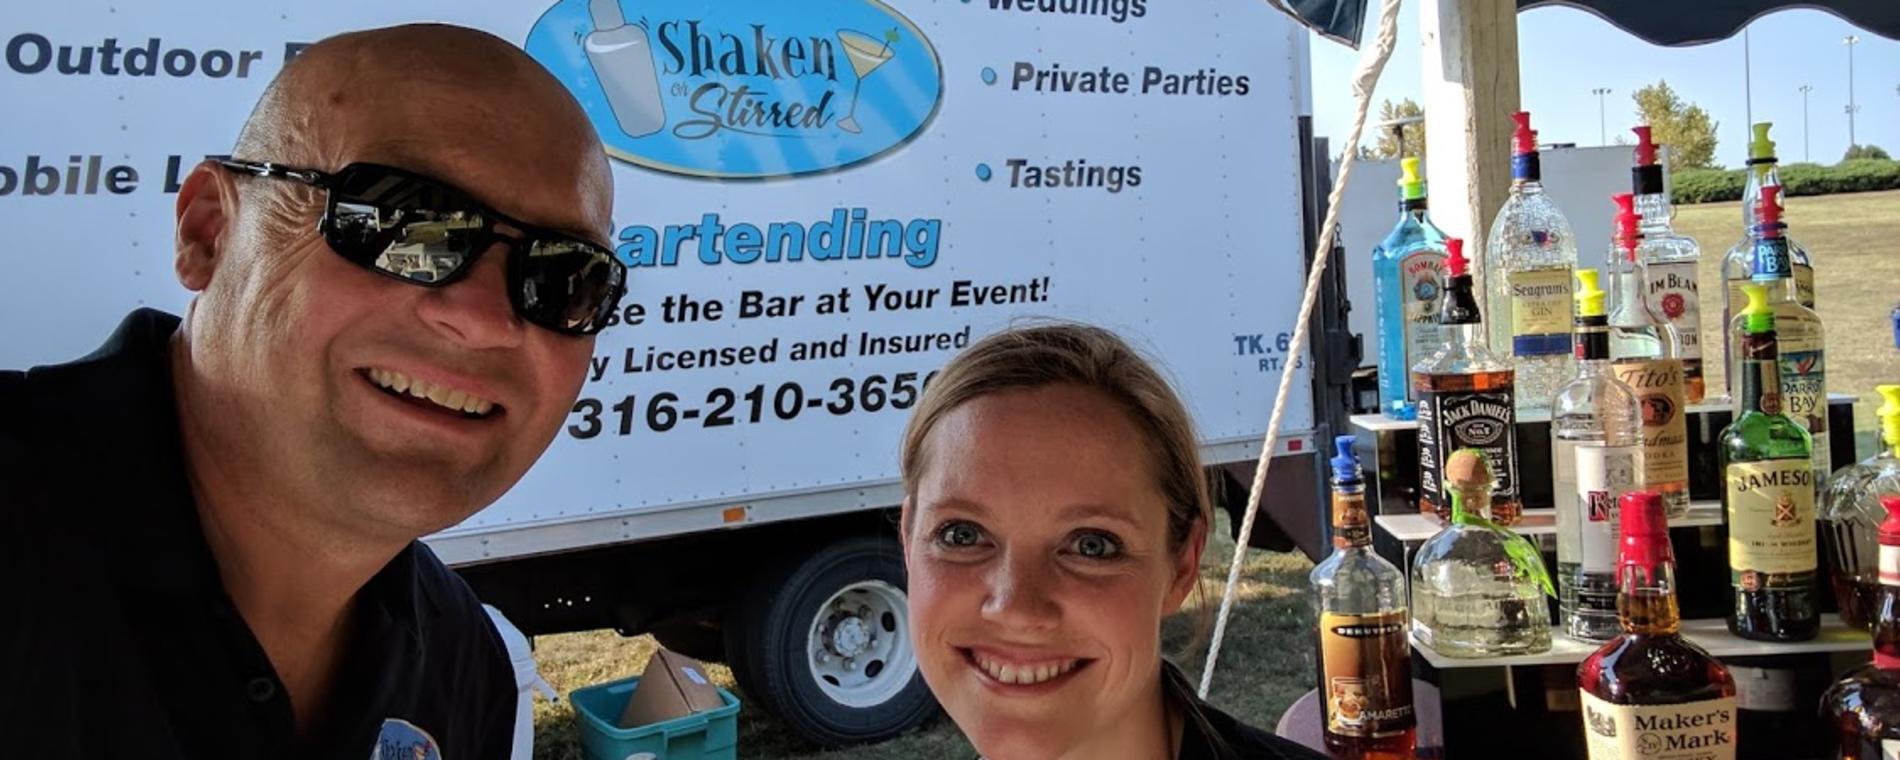 Shaken or Stirred outdoor event Visit Wichita